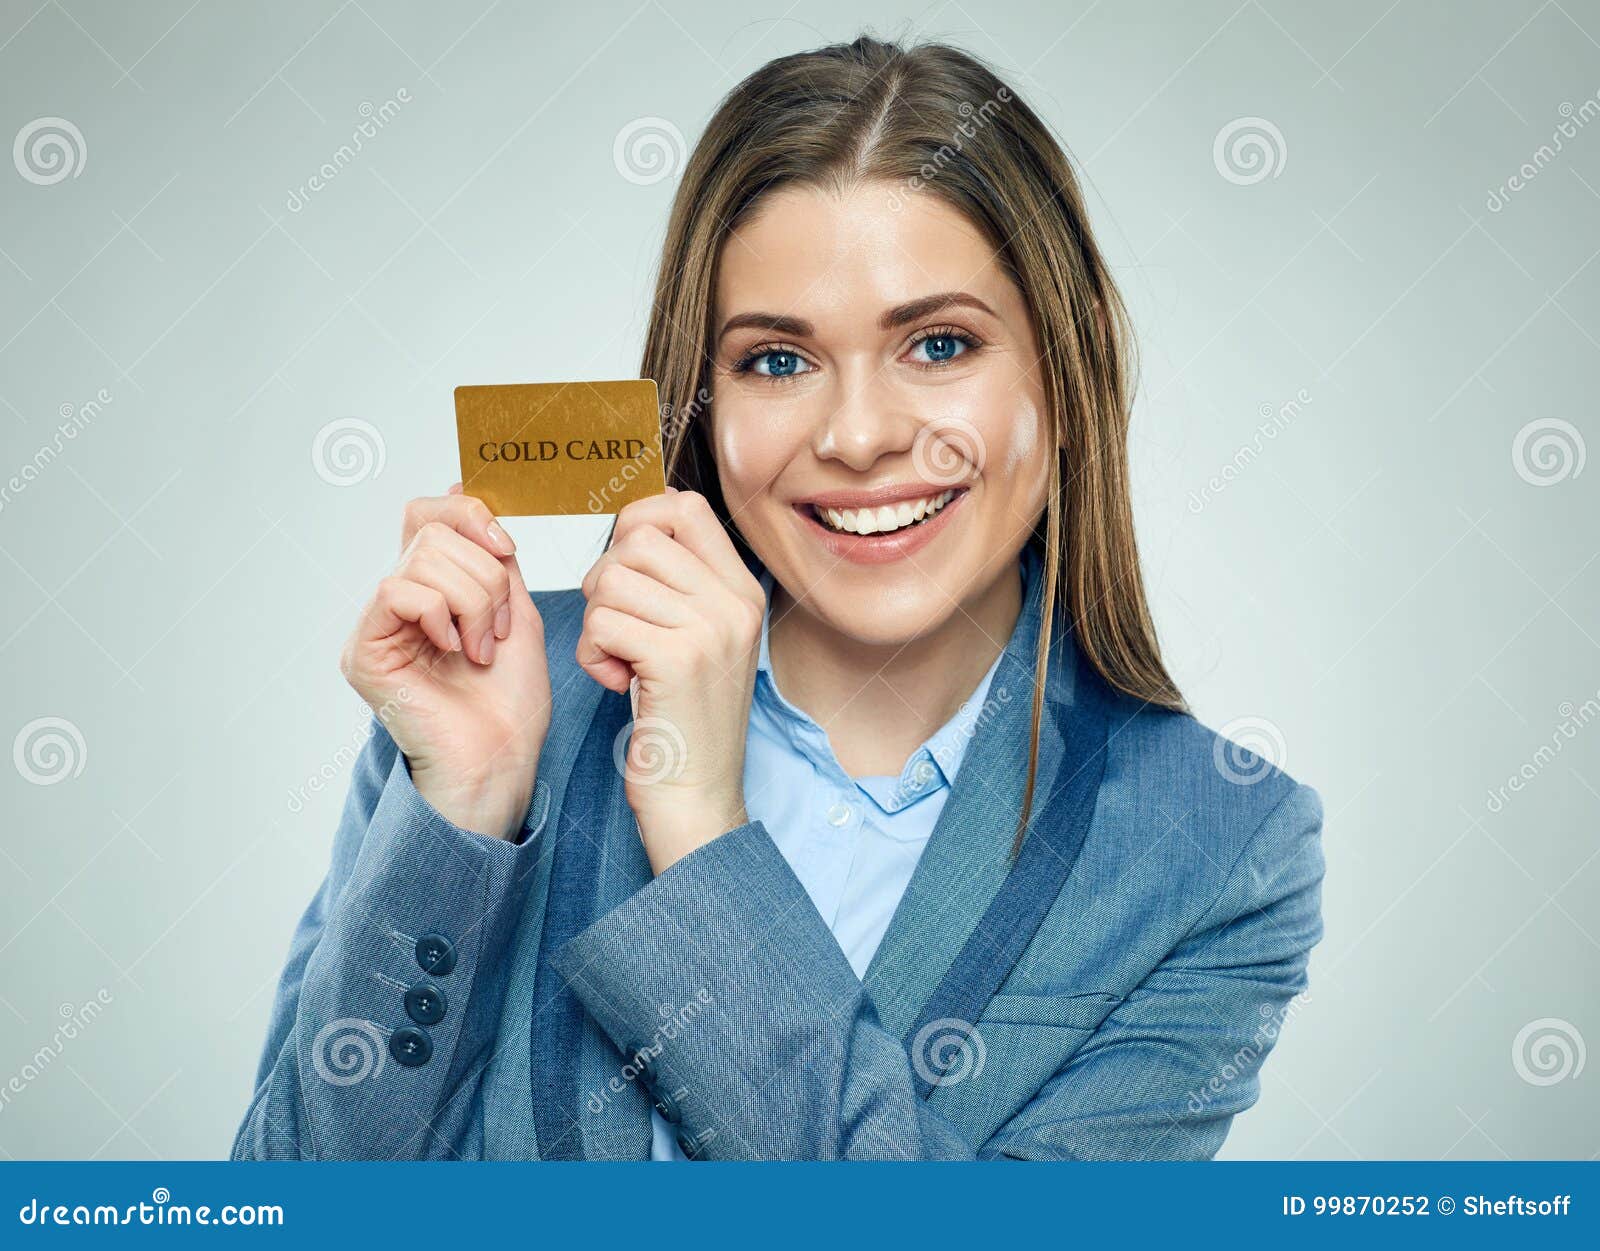 Студентка коммерсантка и просто красавица читать. Человек держит банковскую карту. Девушка с банковской картой. Банковская карта девушка Shutterstock. Девушка держит банковскую карту.